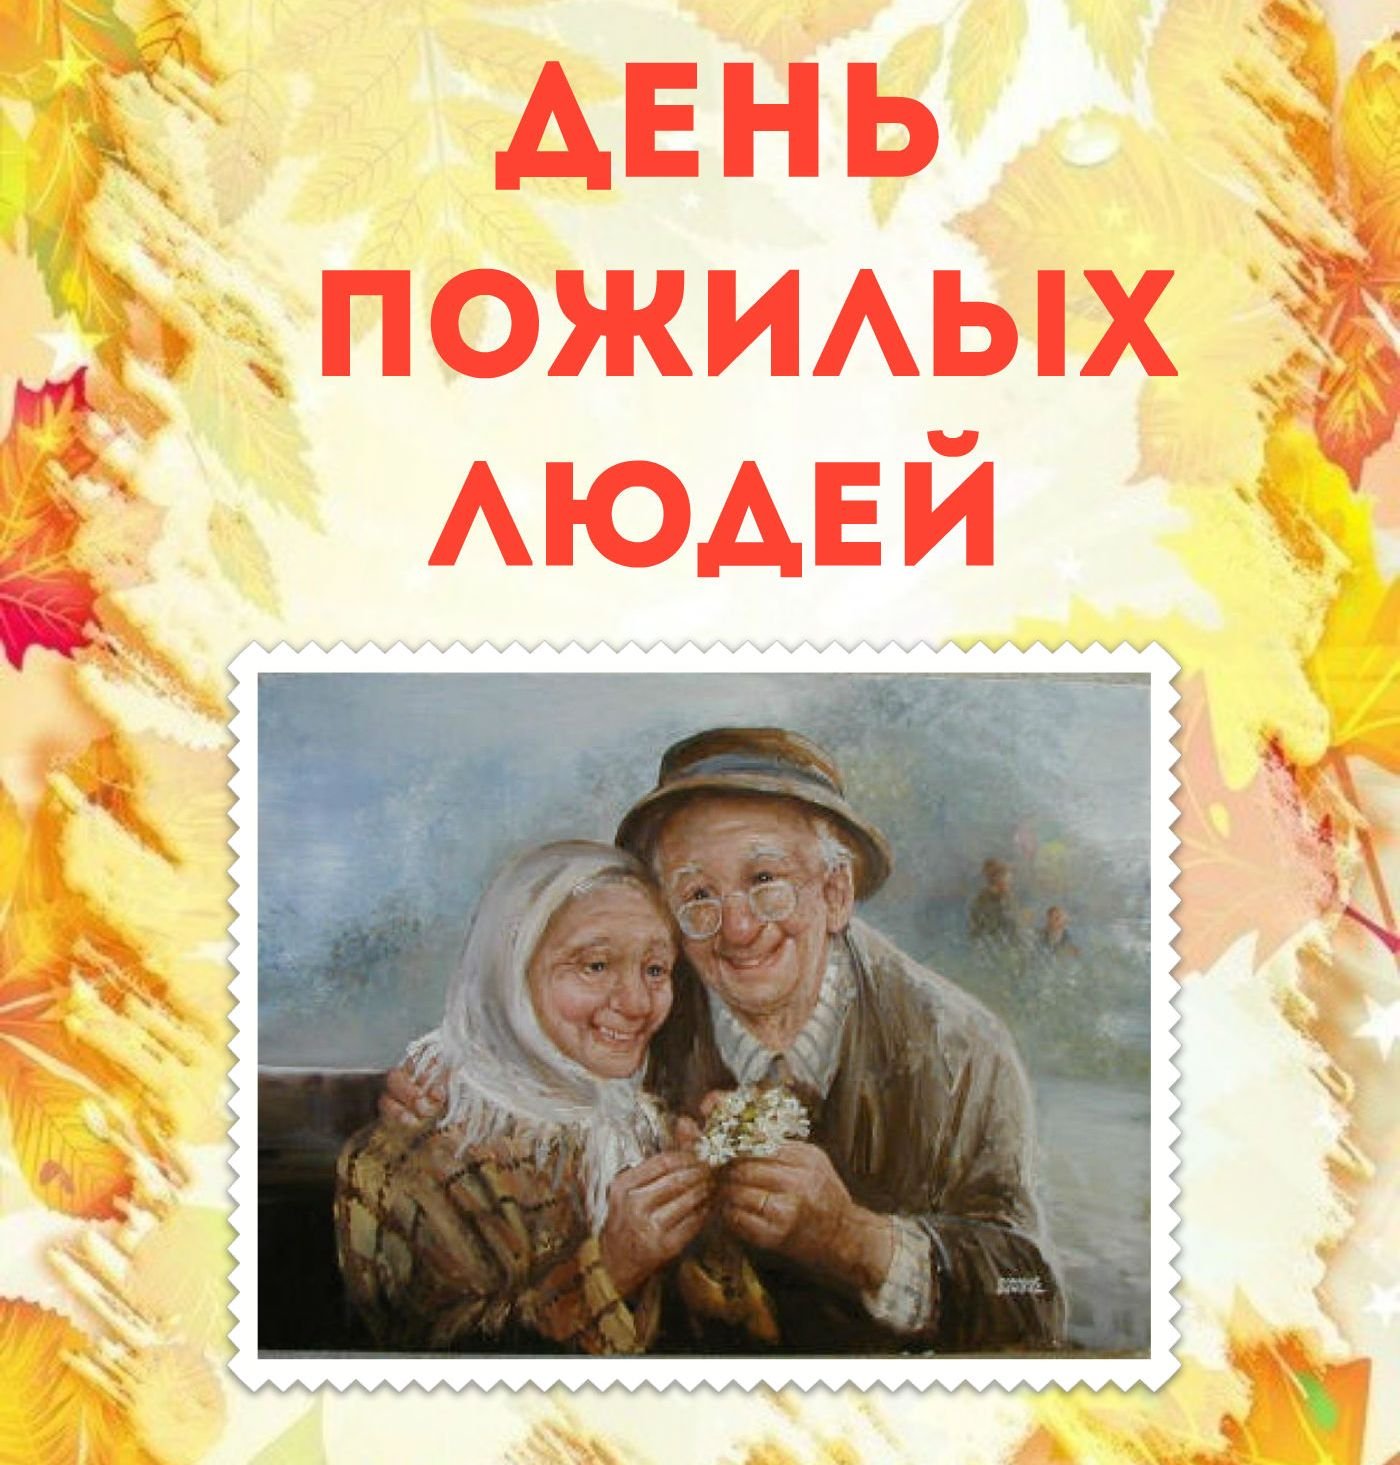 1 октября международный день пожилых